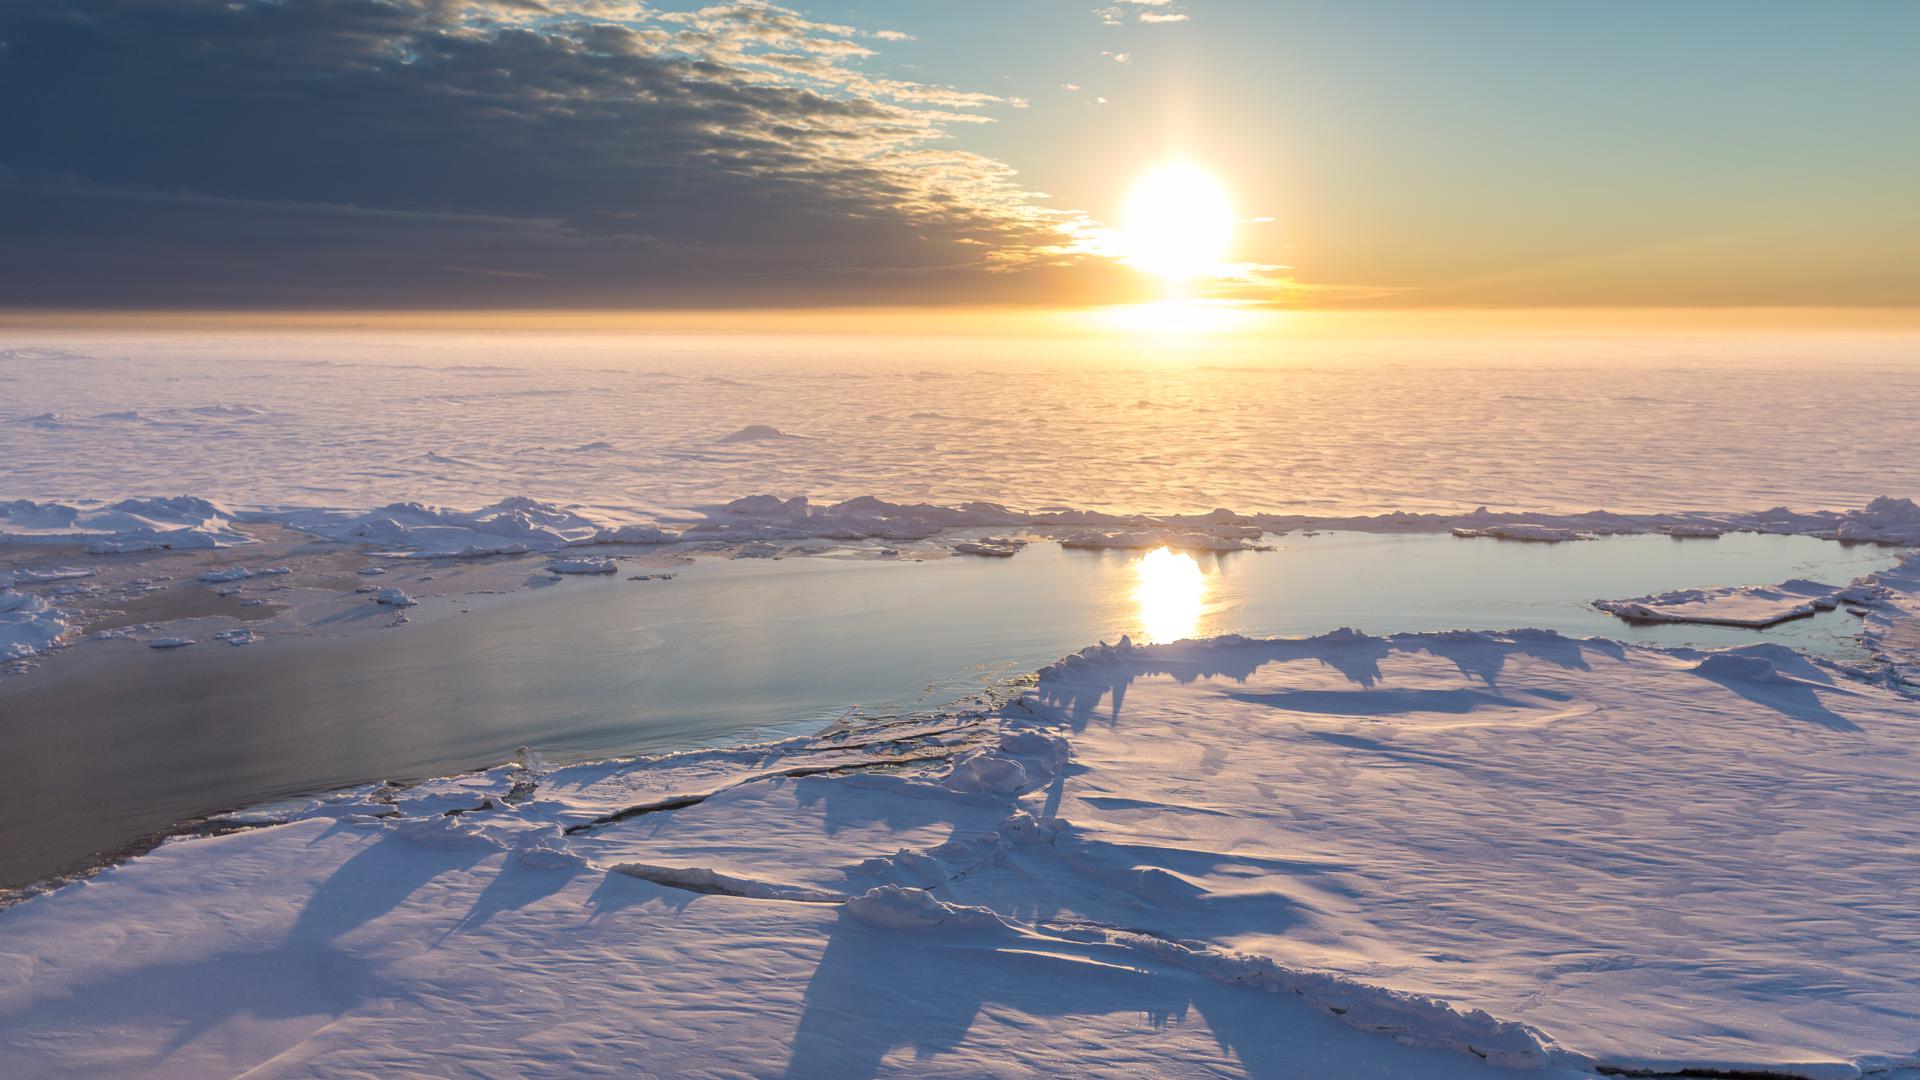 Arktisches Meereis bei Sonnenaufgang. Blick auf einen Schmelzwasserteich und eine Presseiskante im vorderen Bereich.